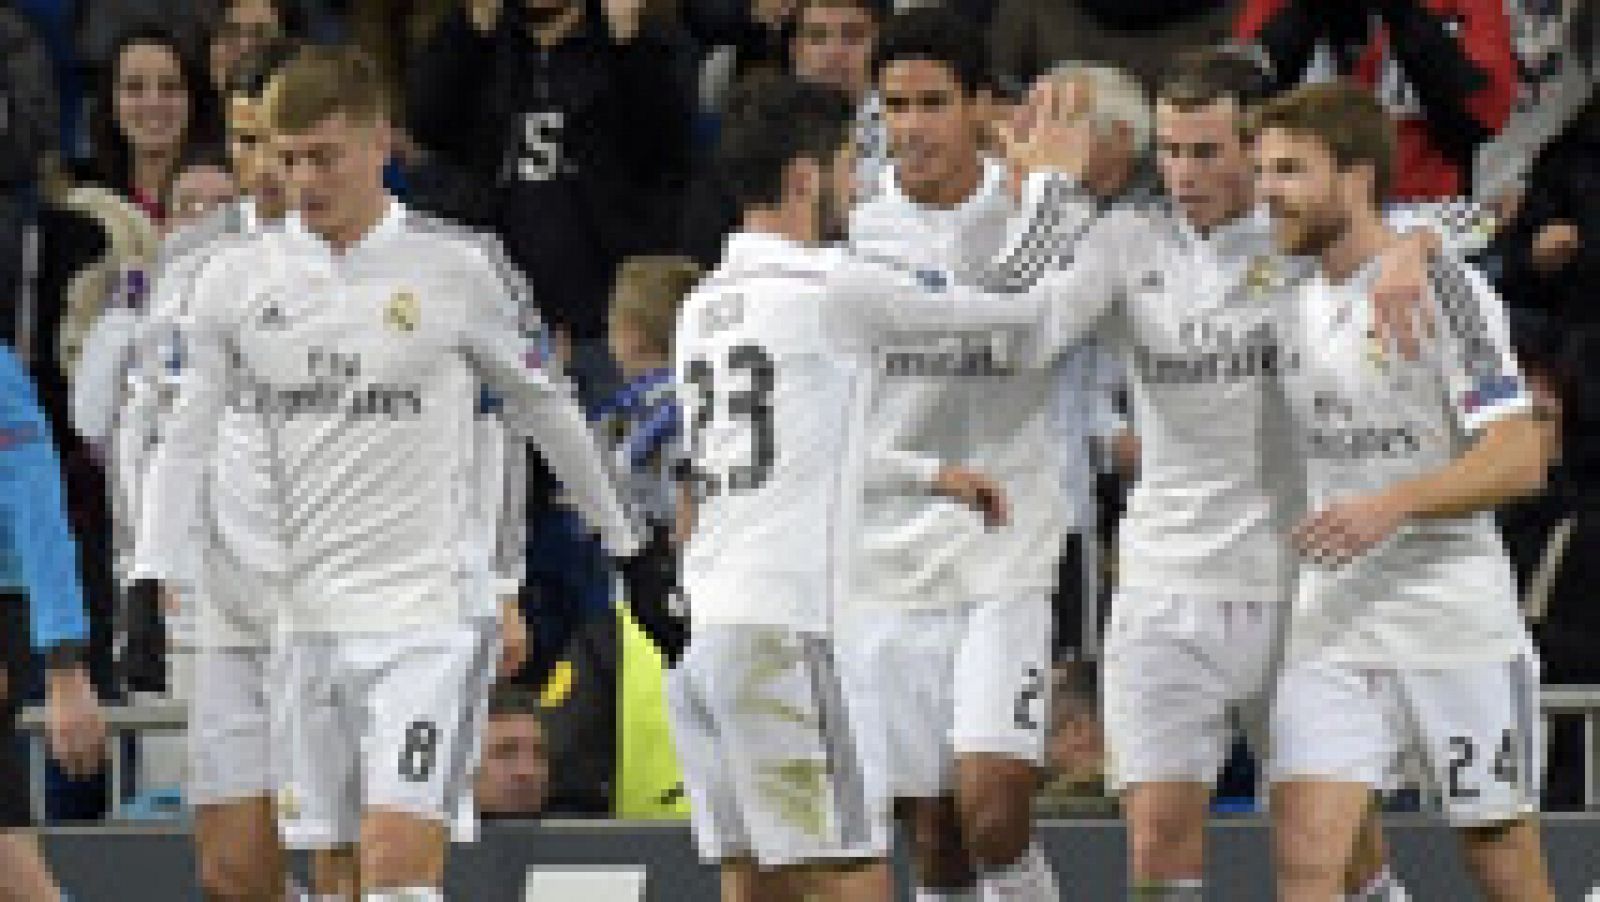 El jugador galés del Real Madrid Gareth Bale ha marcado el 2-0 ante el Ludogorets con un cabezazo tras saque de córner.